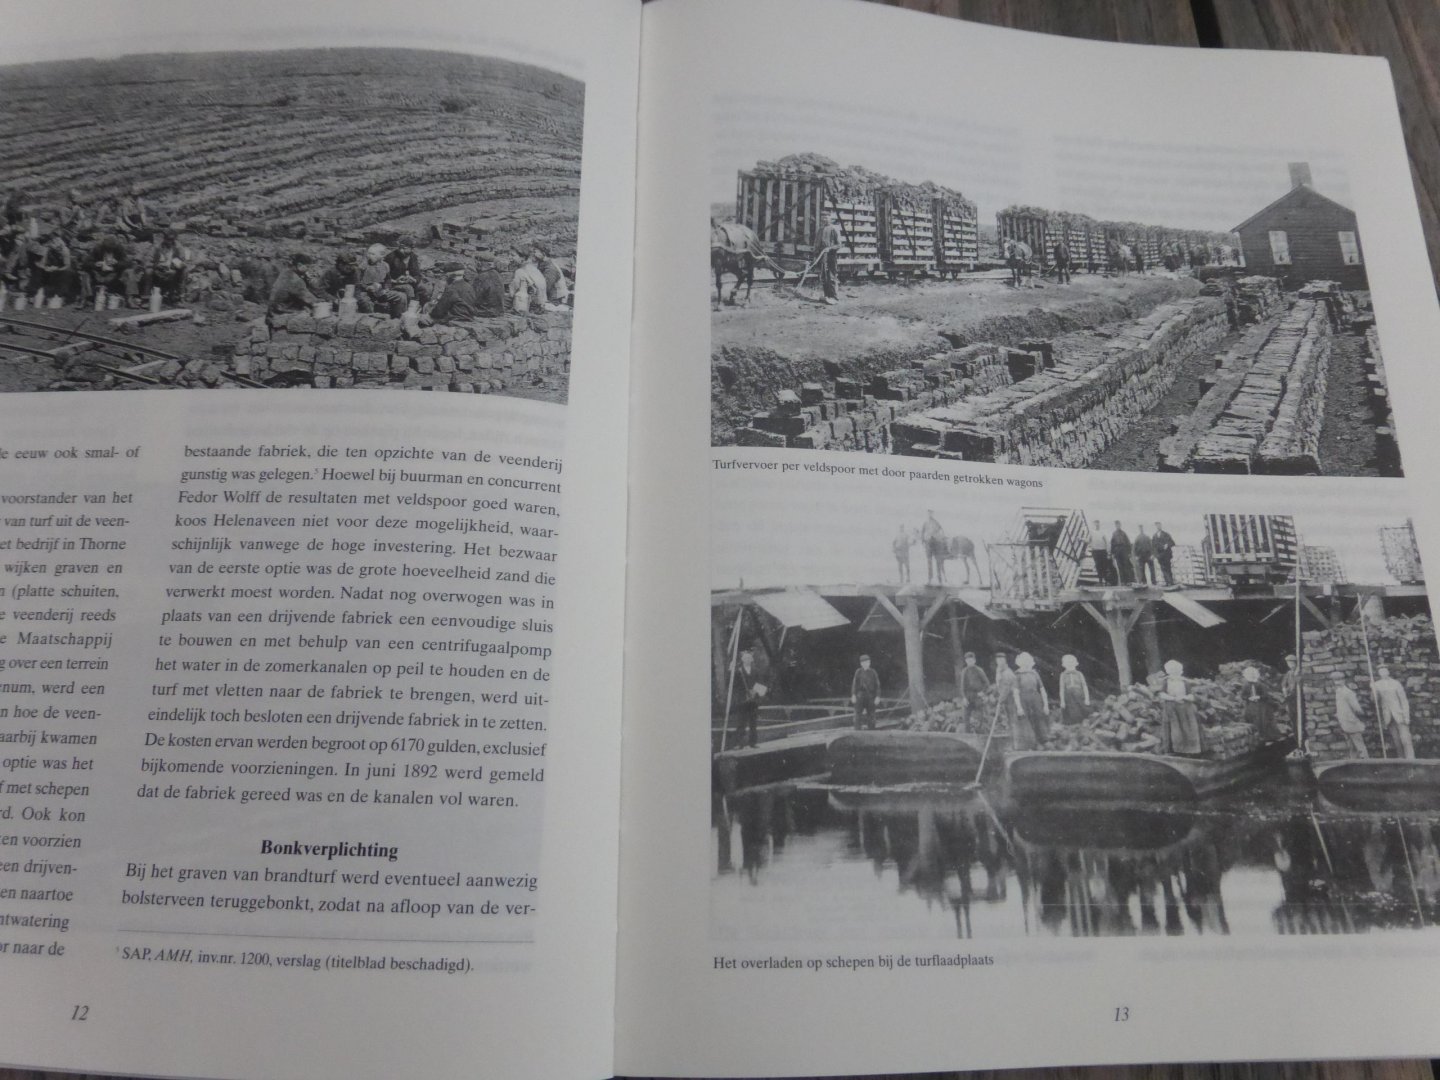 Griendt, A.F. van de - 100 jaar Nederlandse turfstrooiselindsutrie 1882-1983 / druk 1